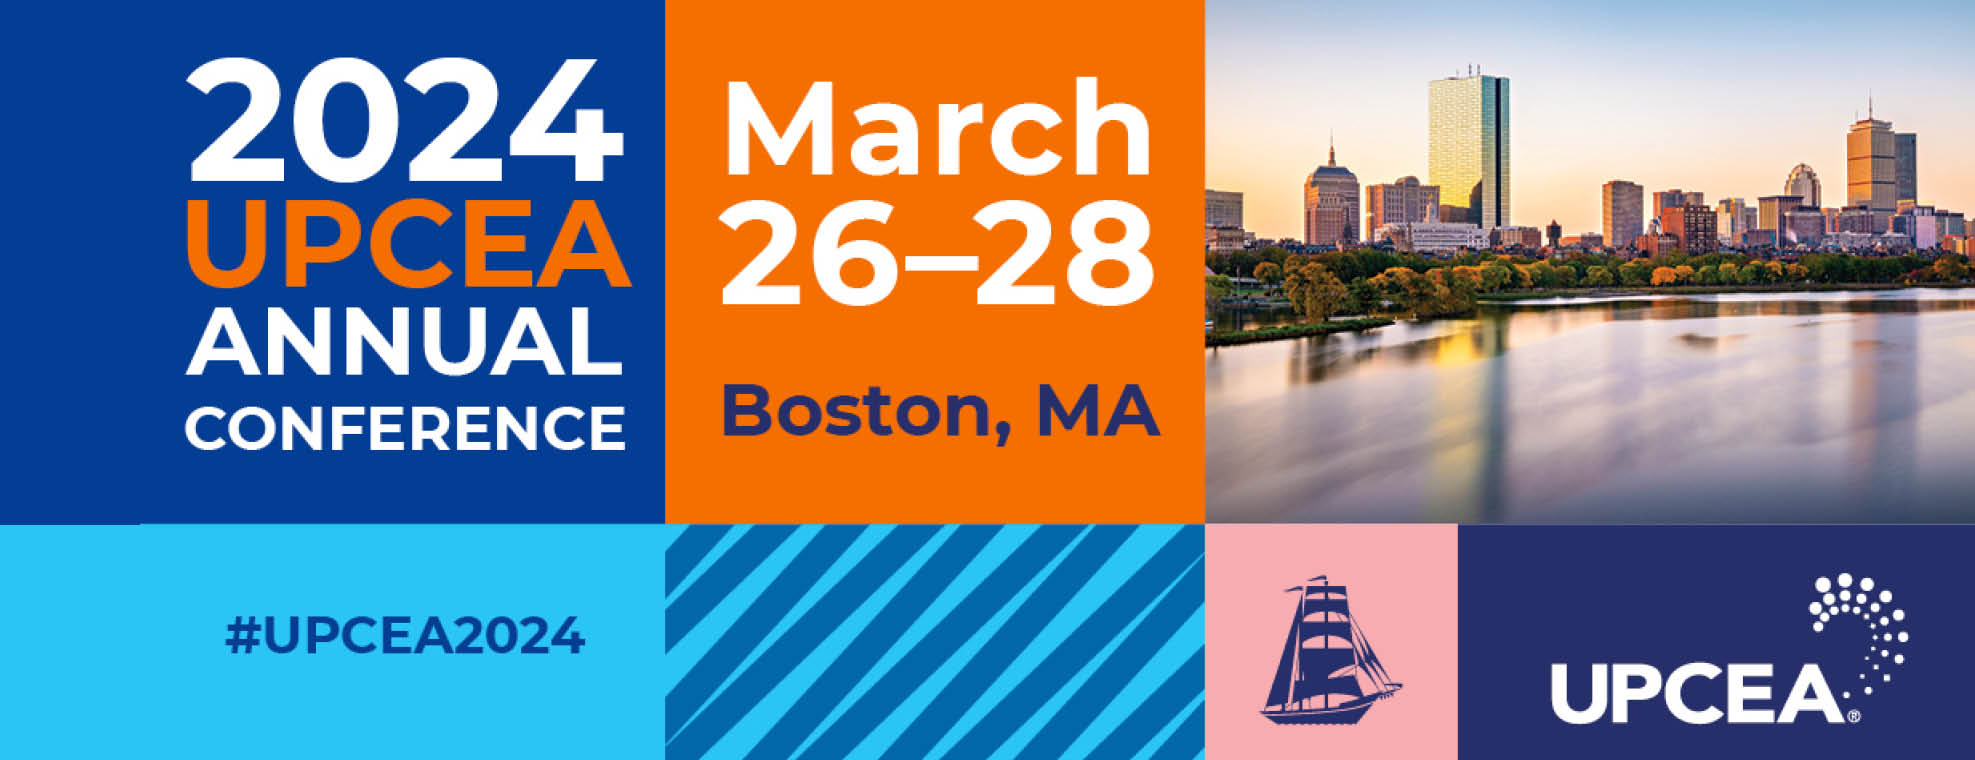 2024 UPCEA Annual Conference | March 26-28, 2024 | Boston, MA